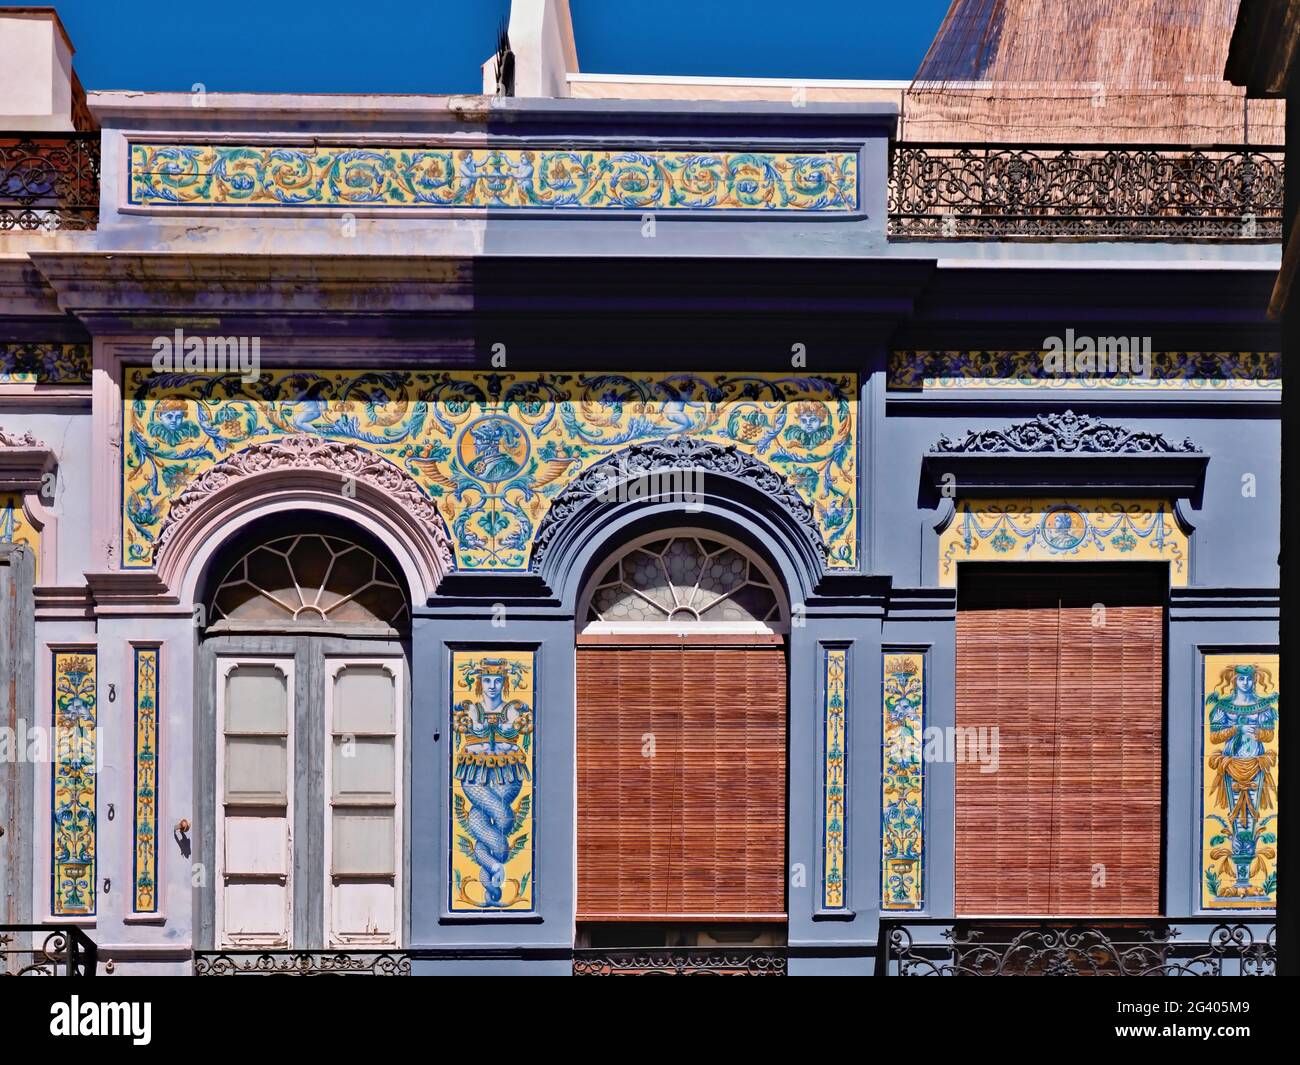 Fachada frontal Art Nouveau, ricamente decorada con azulejos pintados, en Santa Cruz de Tenerife. Las puertas tienen arcos redondos y decoraciones de vidrio, la TIL Foto de stock